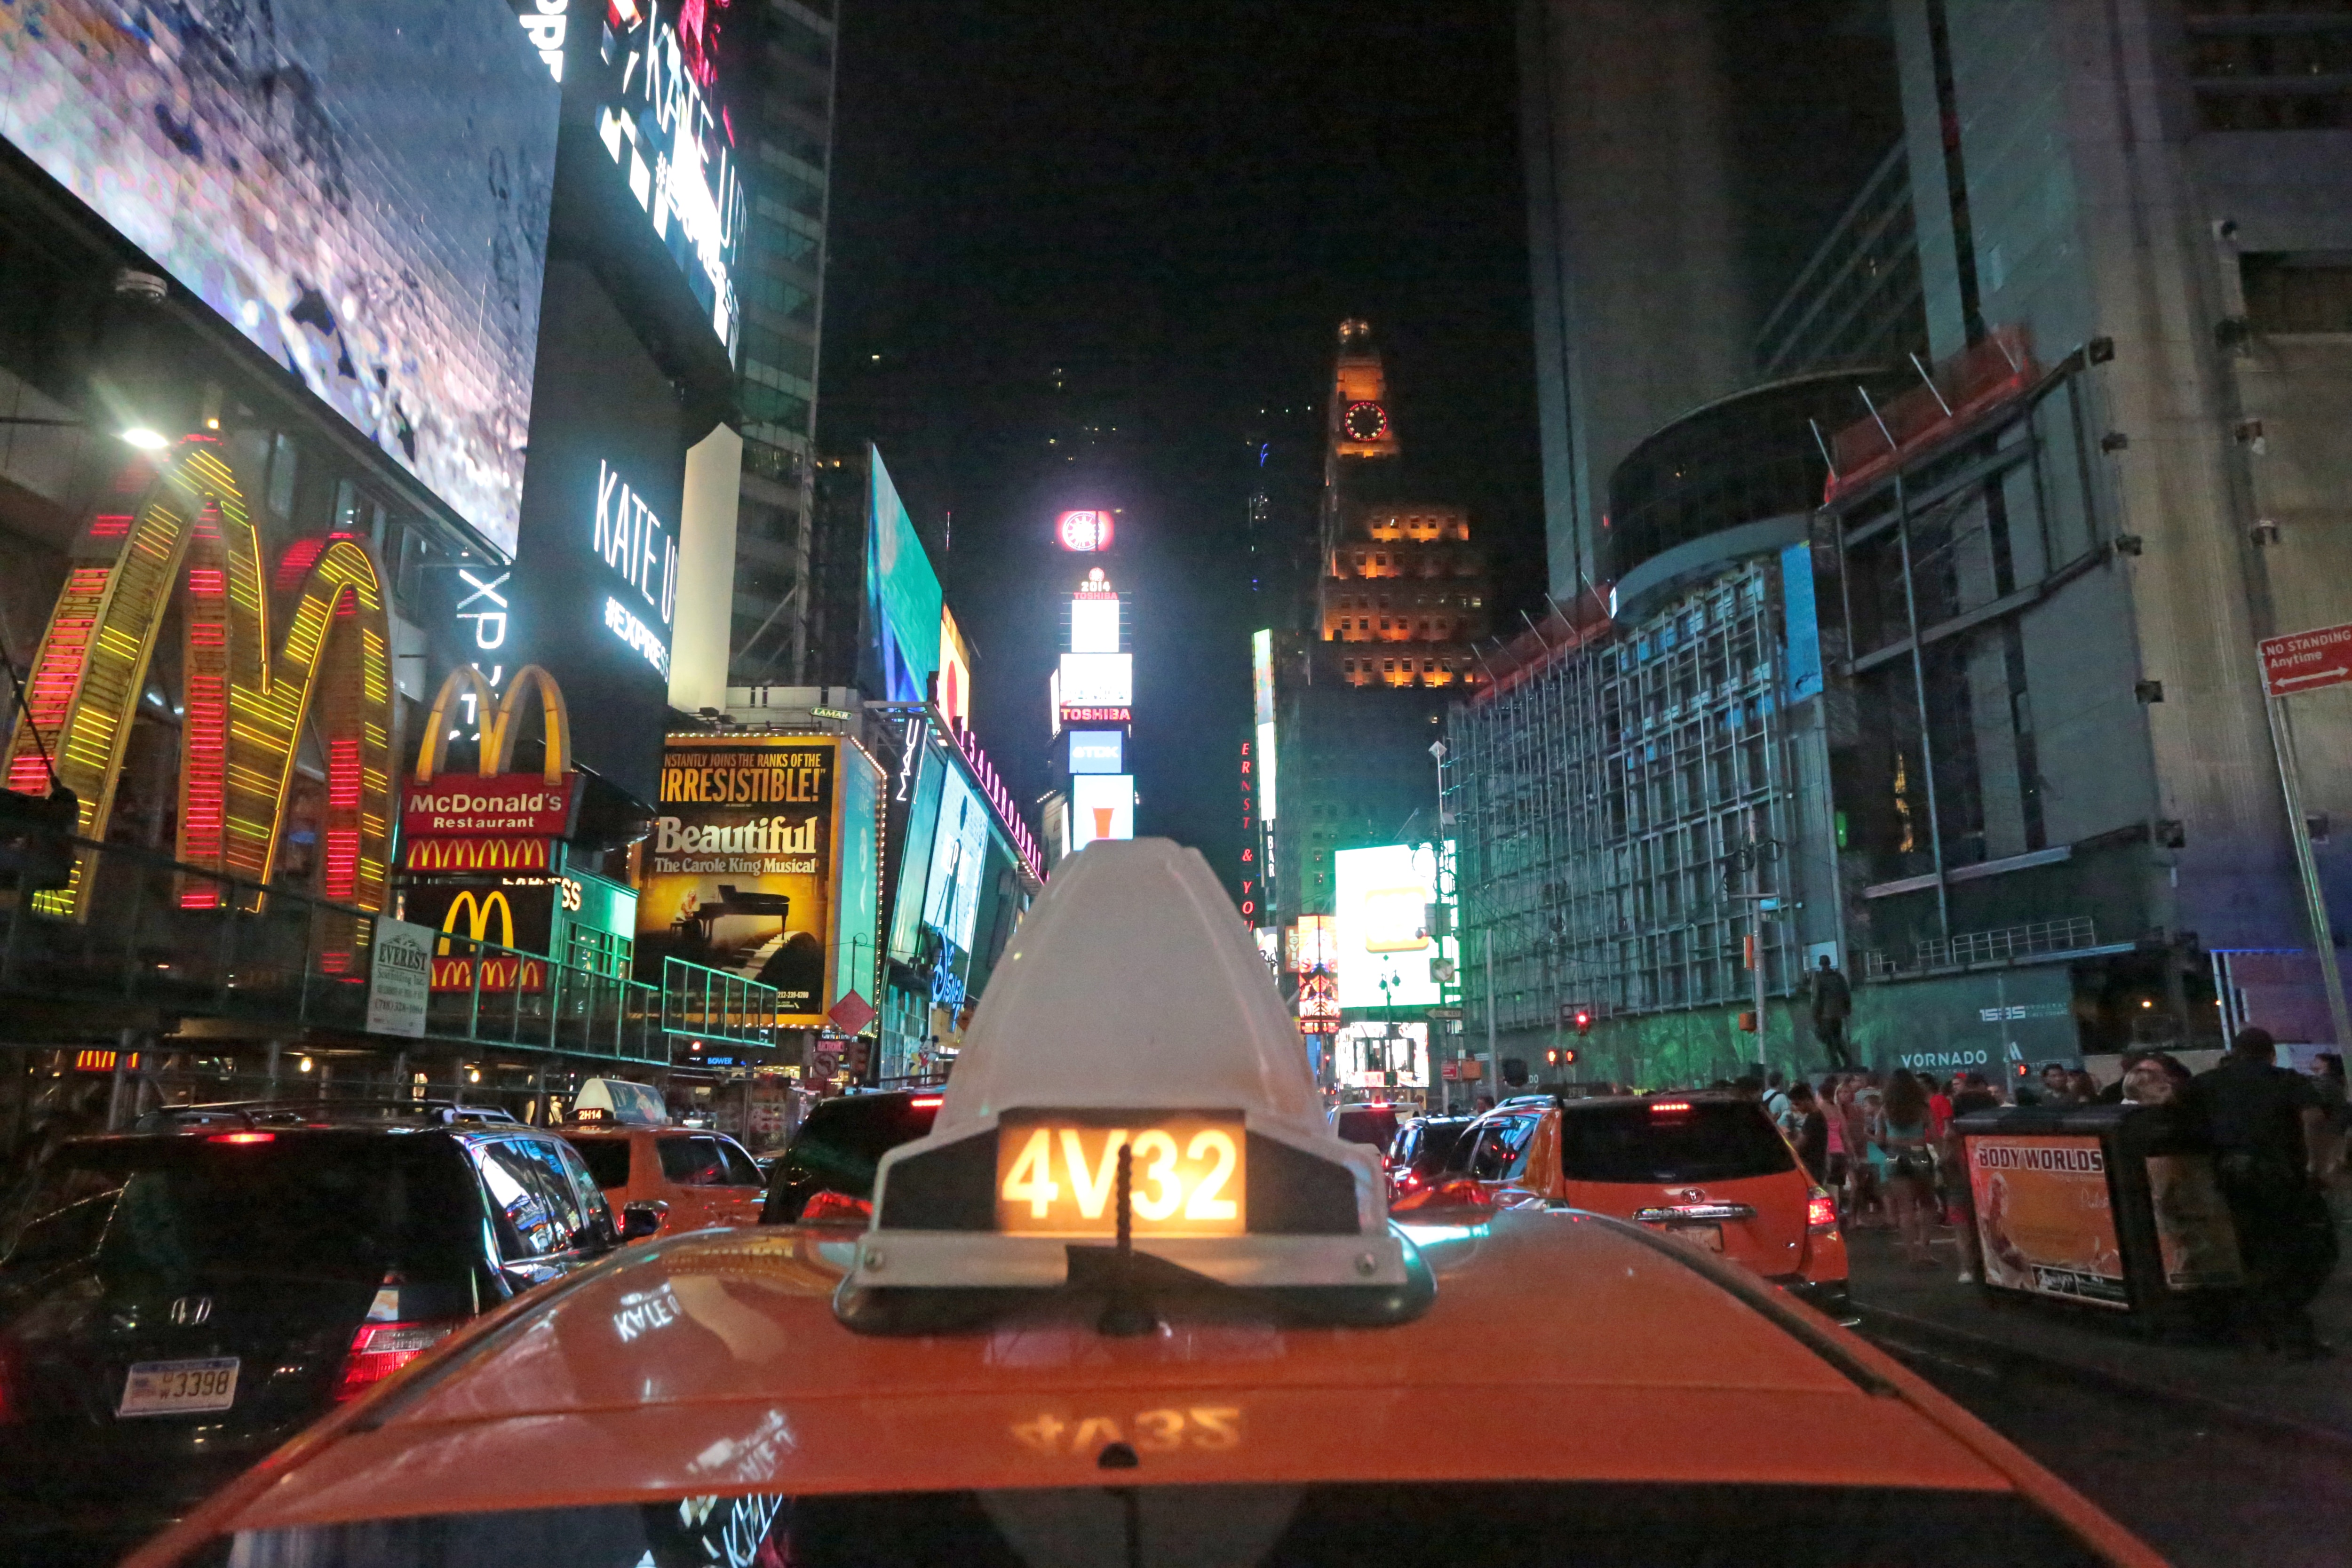 Rato inflável gigante é instalado em rua de Nova York